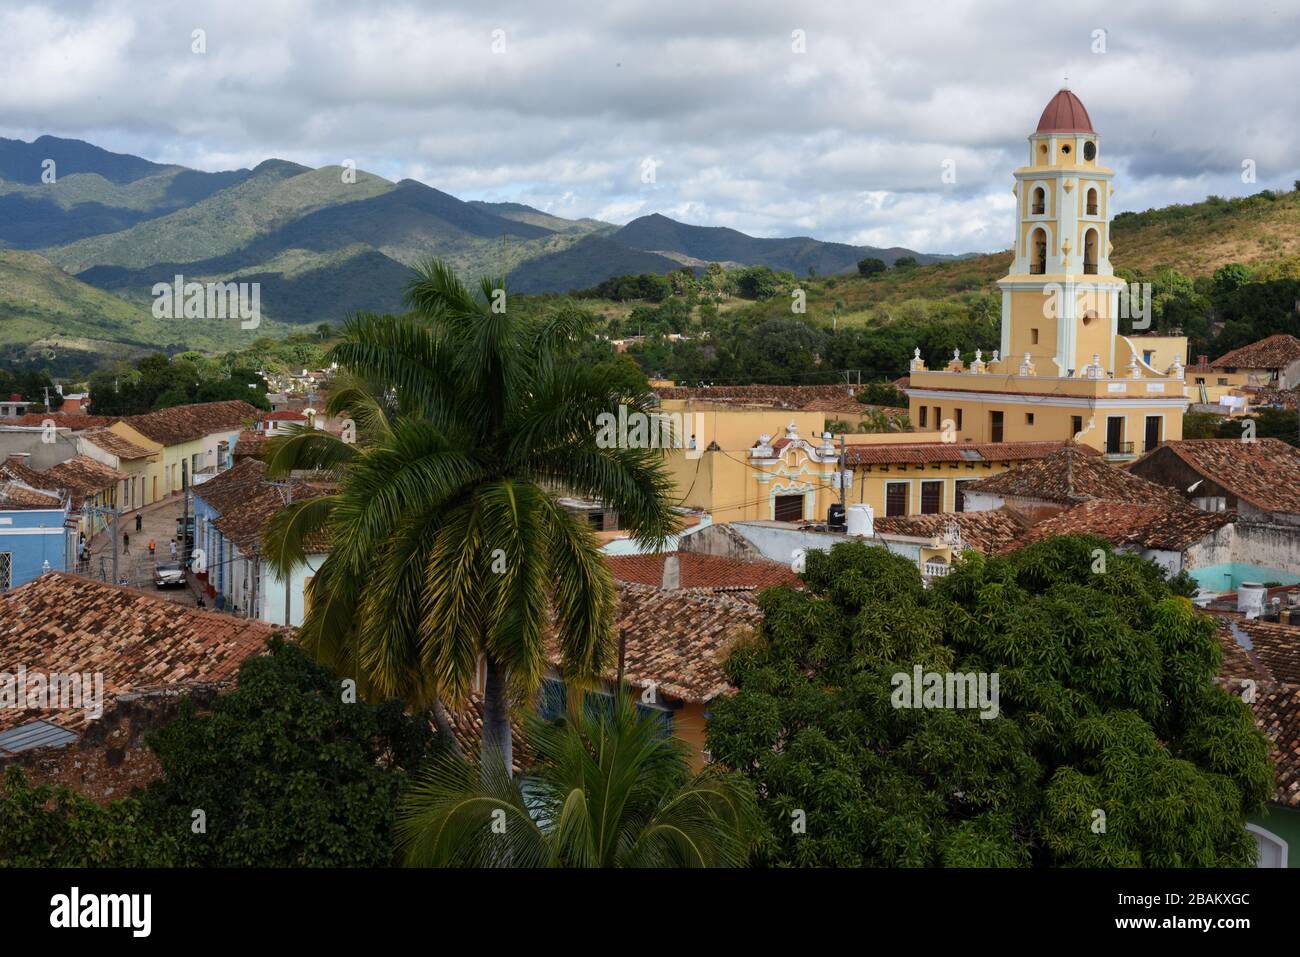 Vista aérea, ciudad, casas, iglesia, 2014, Cuba Foto de stock